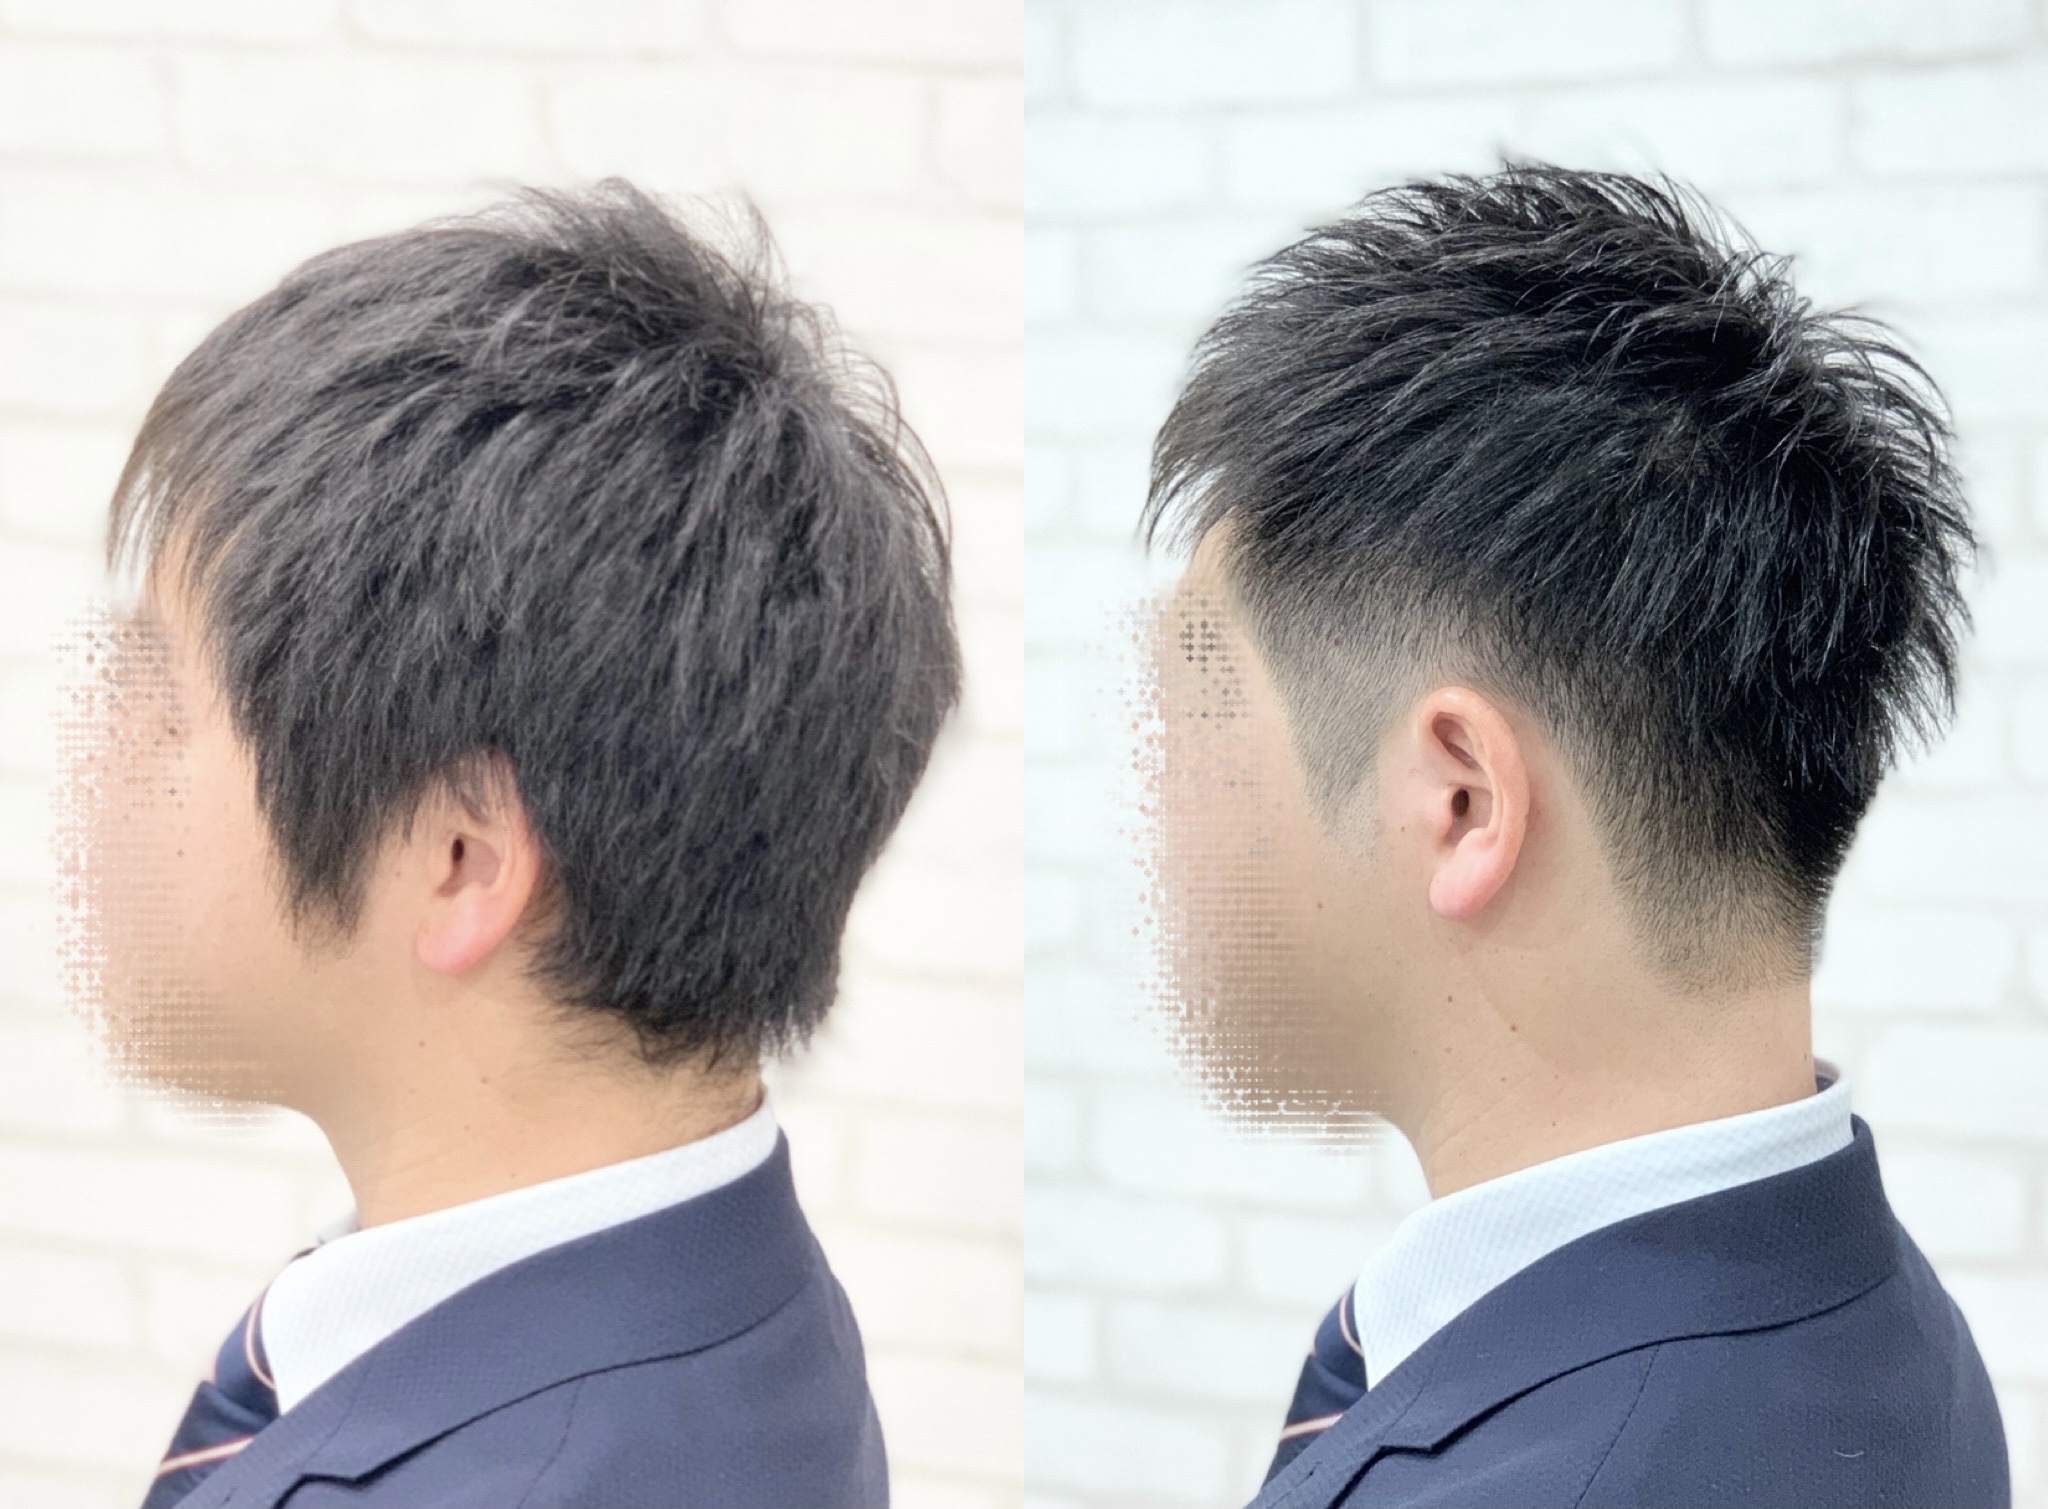 浮く 直毛 メンズ 男性 京都 ツーブロック メンズ直毛 ︎パーマ専門特化美容師 中原浩希のブログ